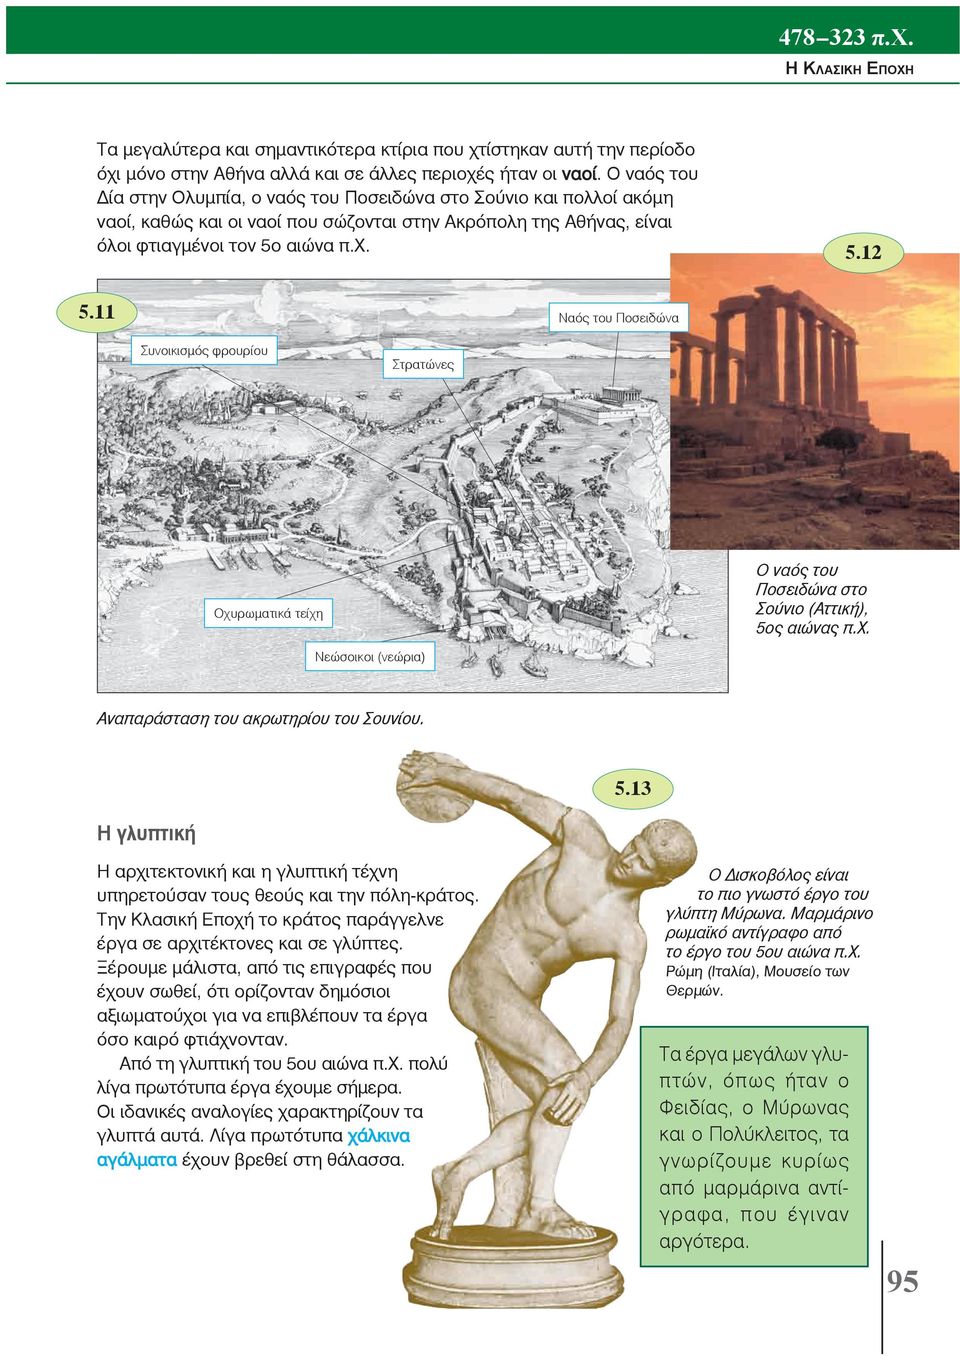 12 Ναός του Ποσειδώνα Συνοικισμός φρουρίου Στρατώνες Ο ναός του Ποσειδώνα στο Σούνιο (Αττική), 5ος αιώνας π.χ. Οχυρωματικά τείχη Νεώσοικοι (νεώρια) Αναπαράσταση του ακρωτηρίου του Σουνίου. 5.13 Η γλυπτική Η αρχιτεκτονική και η γλυπτική τέχνη υπηρετούσαν τους θεούς και την πόλη-κράτος.